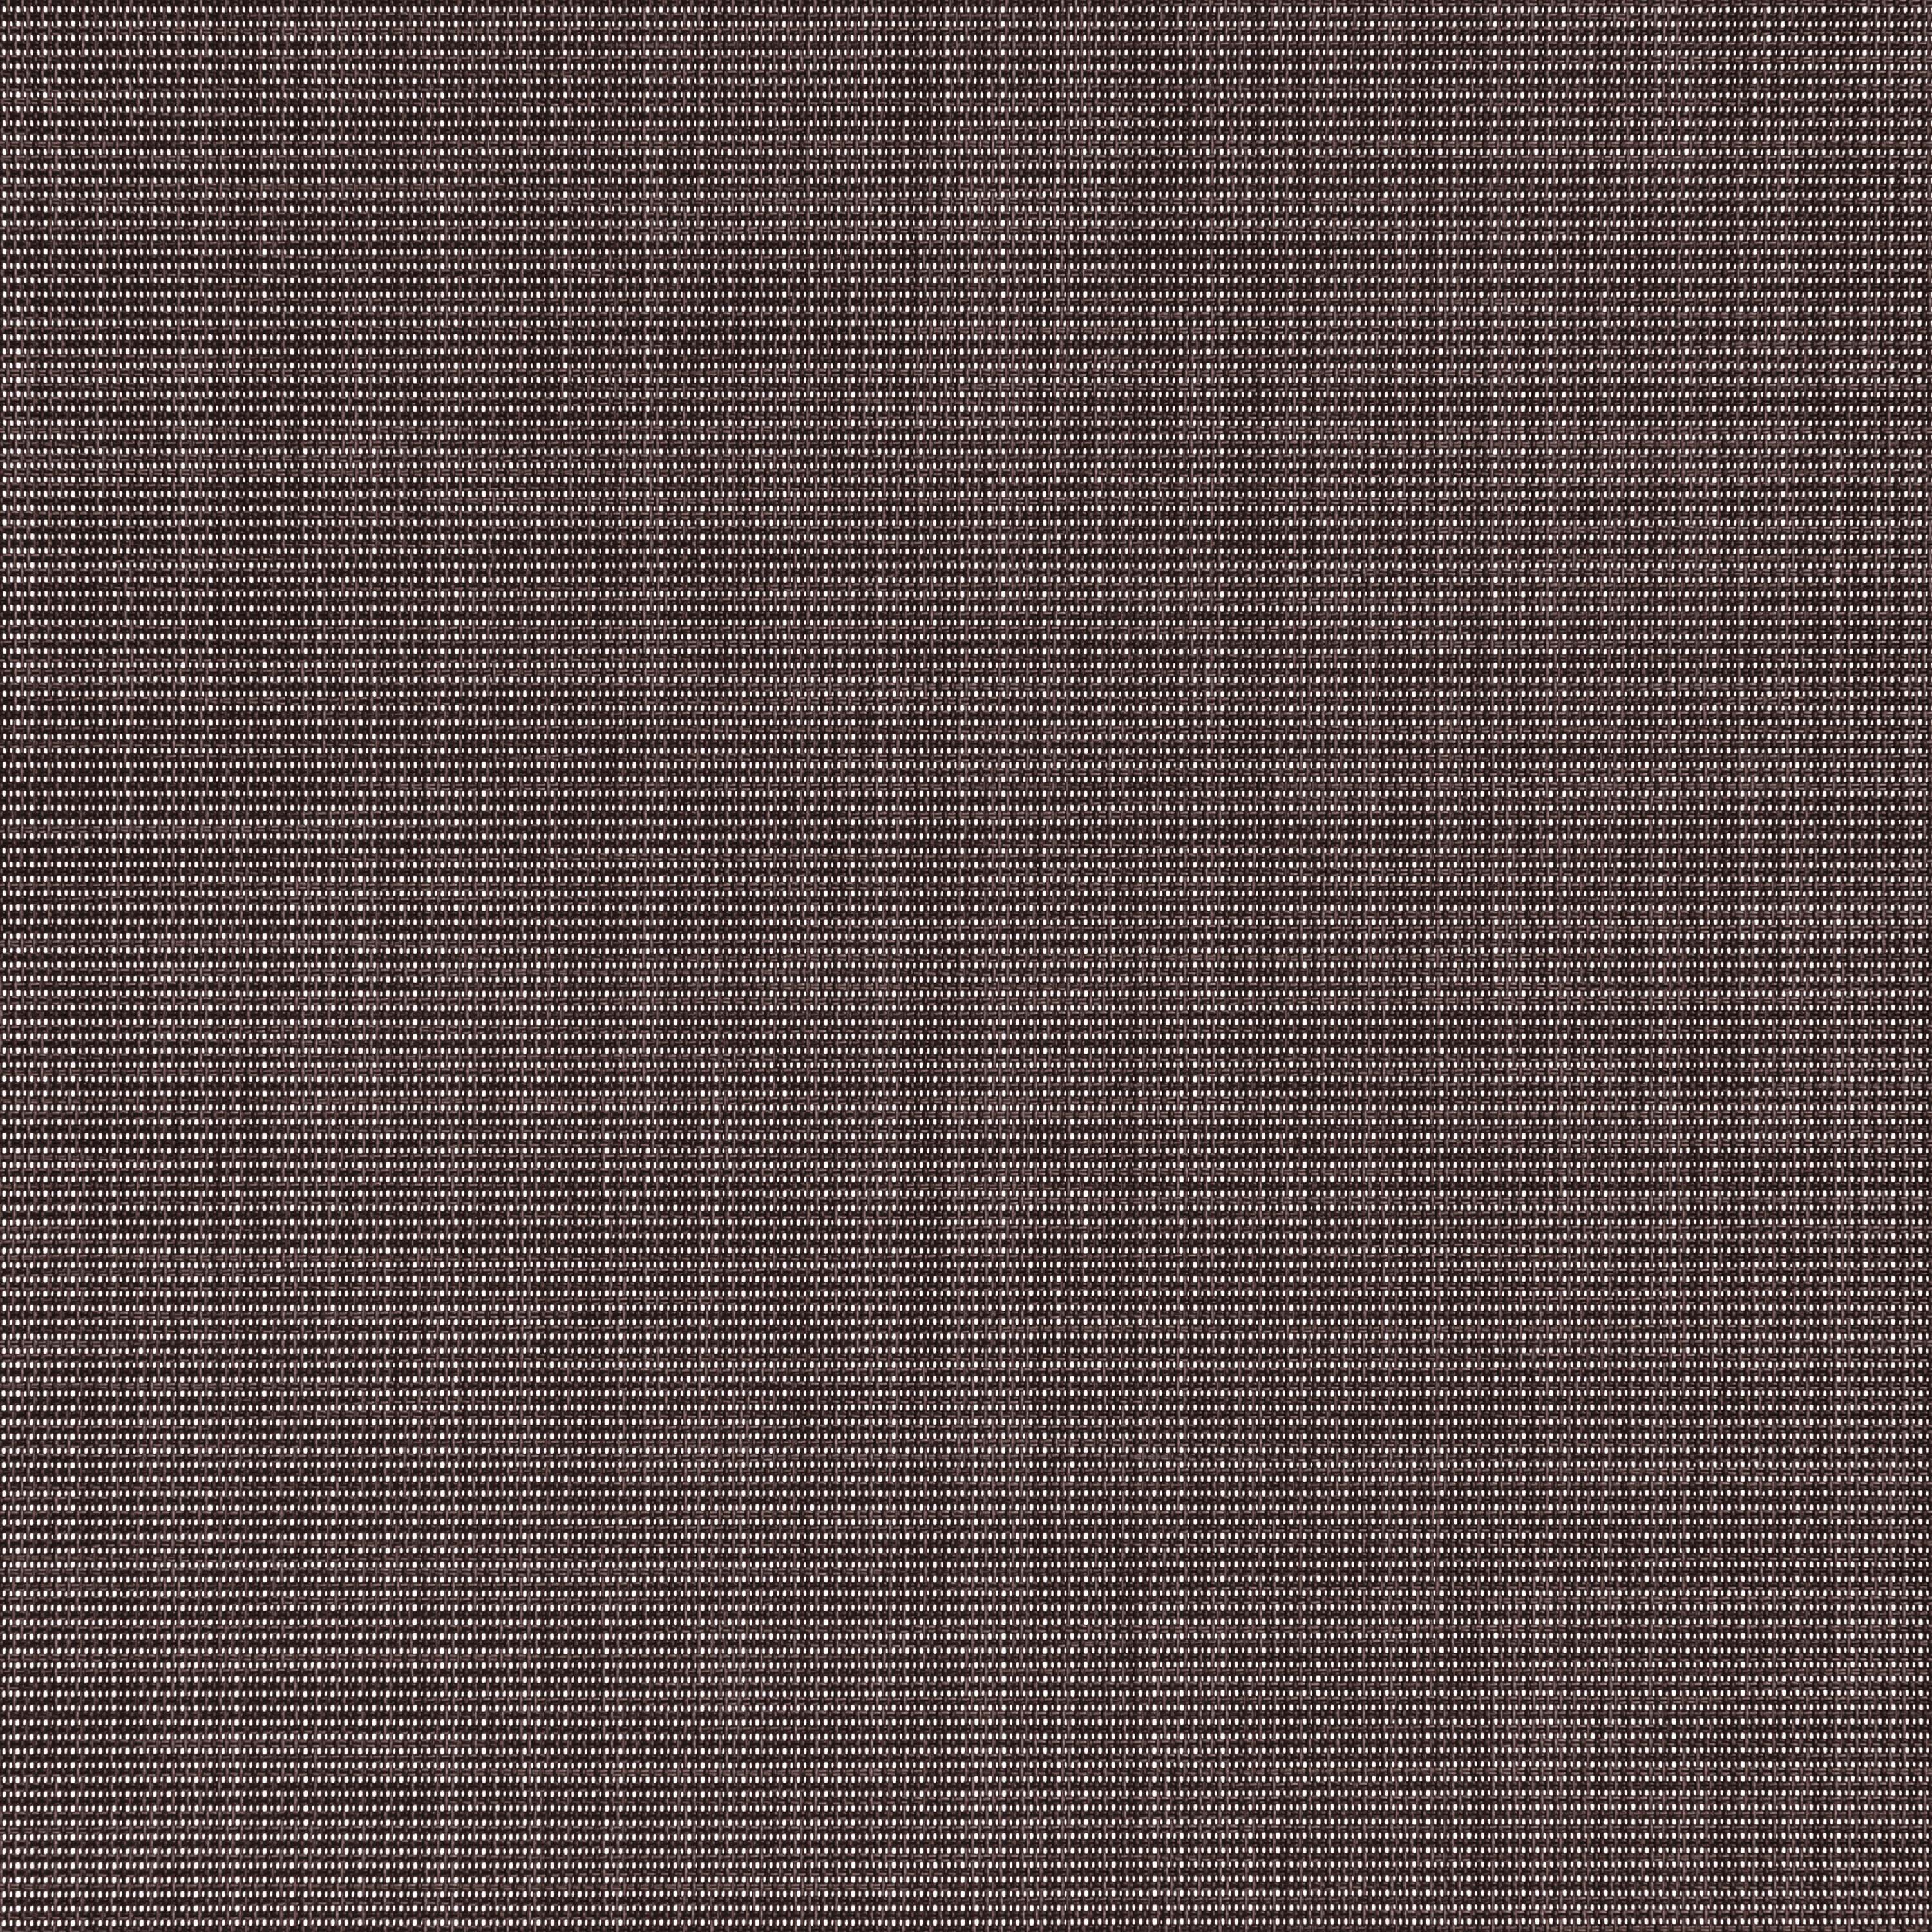 Altex - Fabric - LINEN - Raven - SCA5-LINEN-05-250